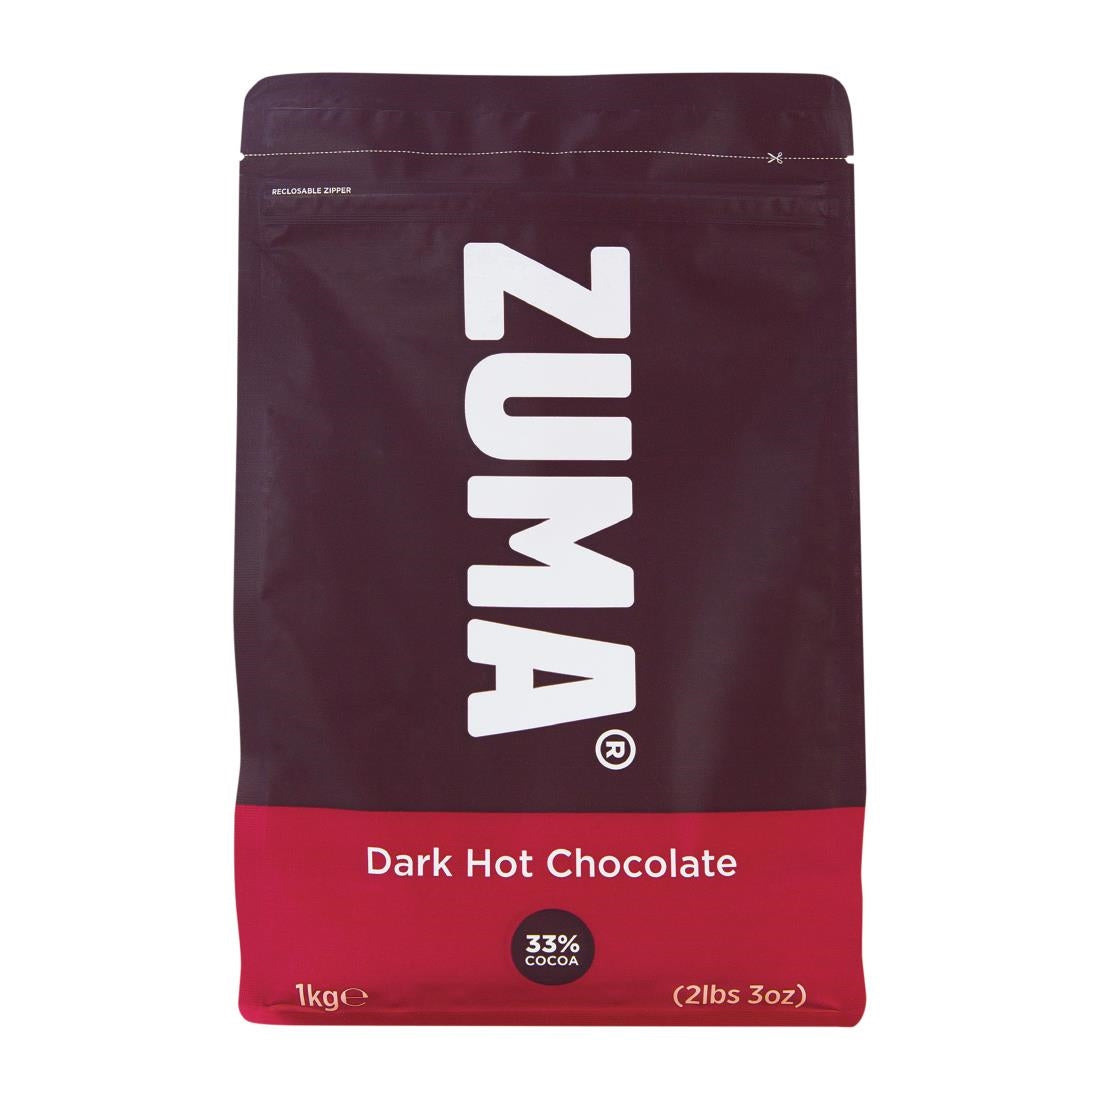 DX612 Zuma Dark Hot Chocolate (33% Cocoa) 1kg Bag